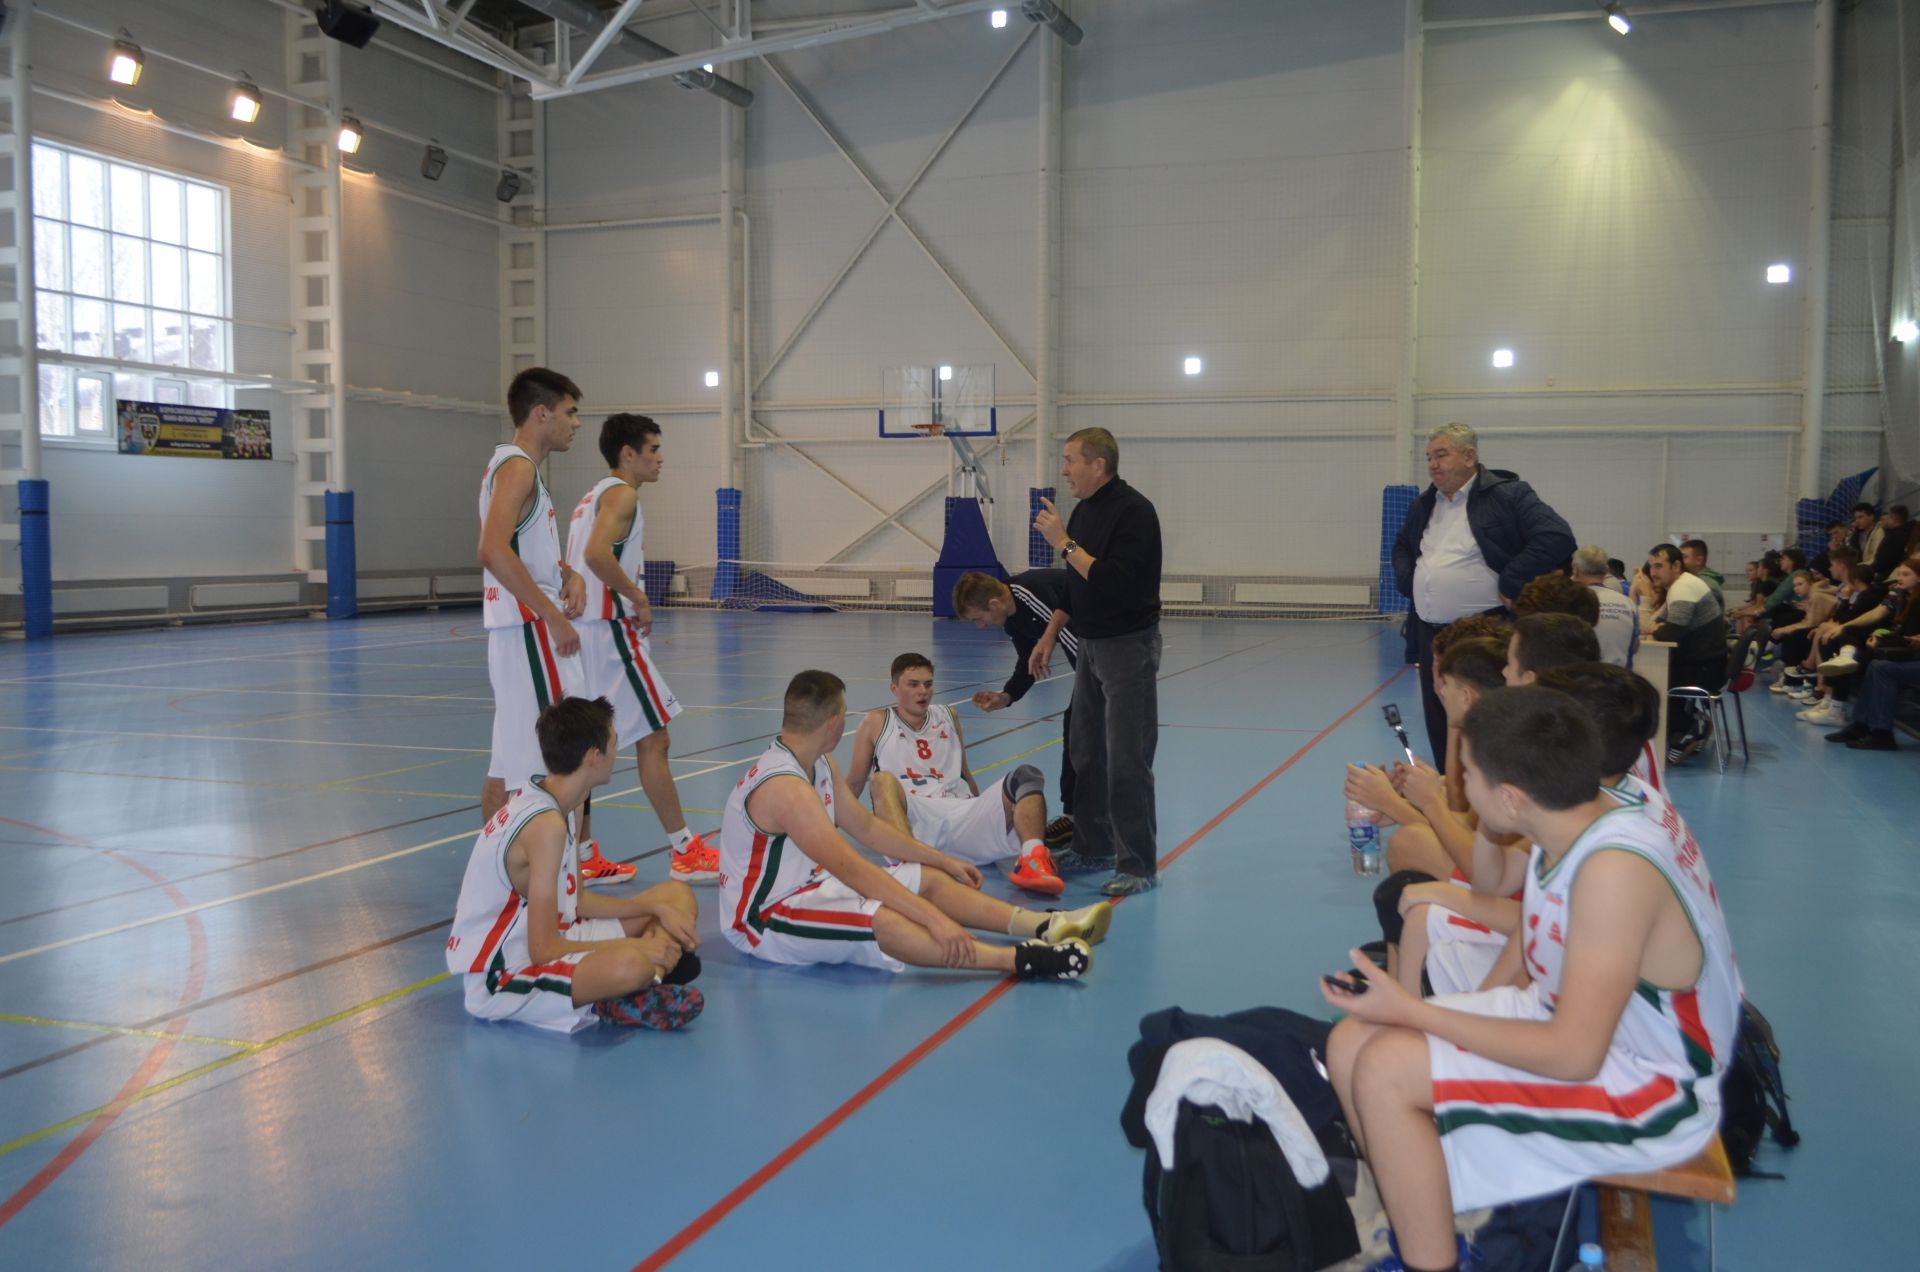 Определены победители зонального этапа Чемпионата школьной баскетбольной лиги «КЭС-БАСКЕТ»